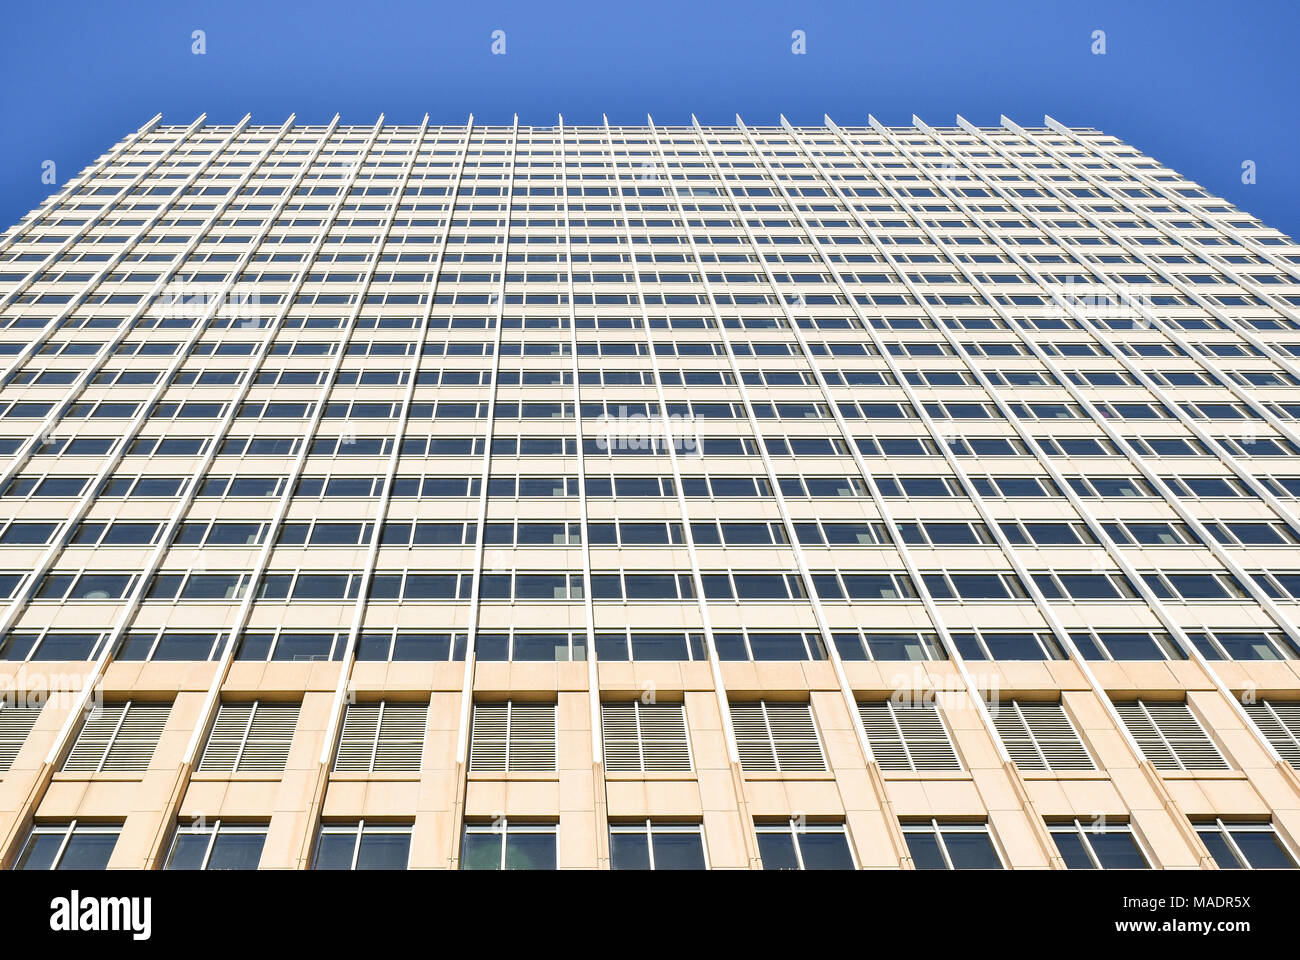 La façade d'un immeuble de bureaux à la recherche de la terre vers le ciel Banque D'Images